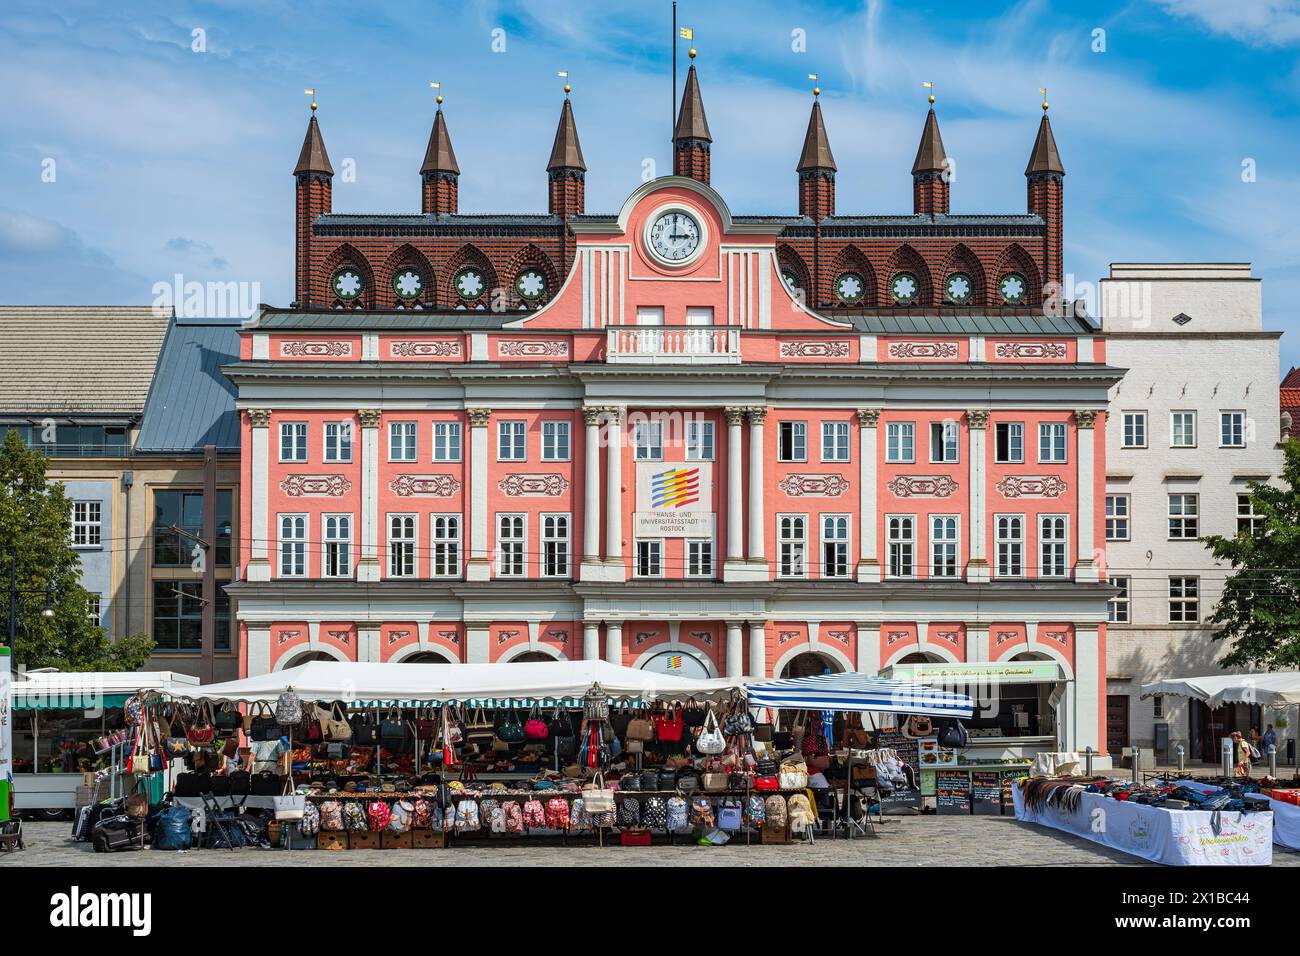 Malerische Marktszene auf dem Neuen Marktplatz vor dem historischen Rathaus in der Altstadt von Rostock, Mecklenburg-Vorpommern. Stockfoto